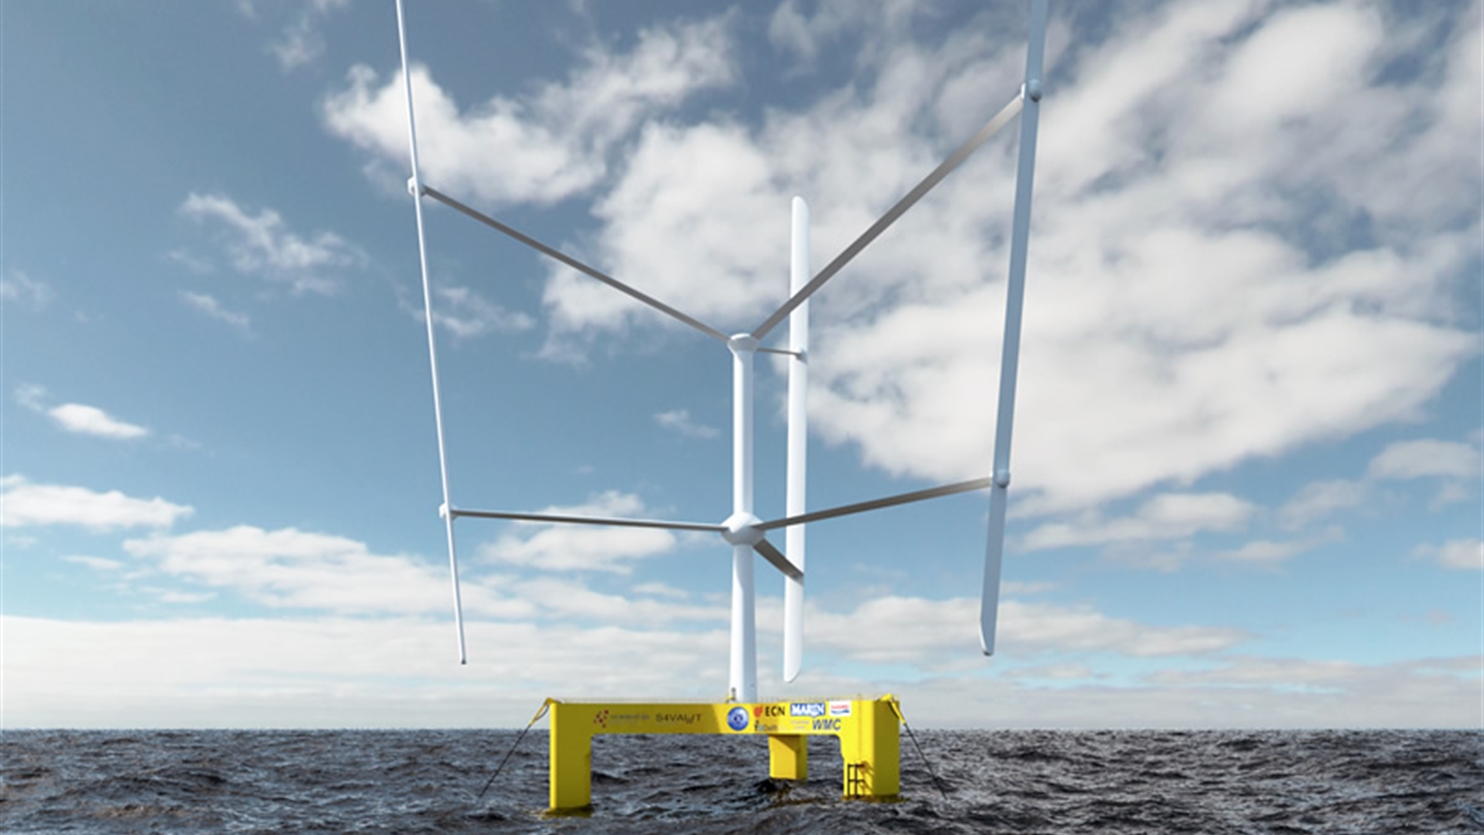 Floating wind turbine at sea, artist impression